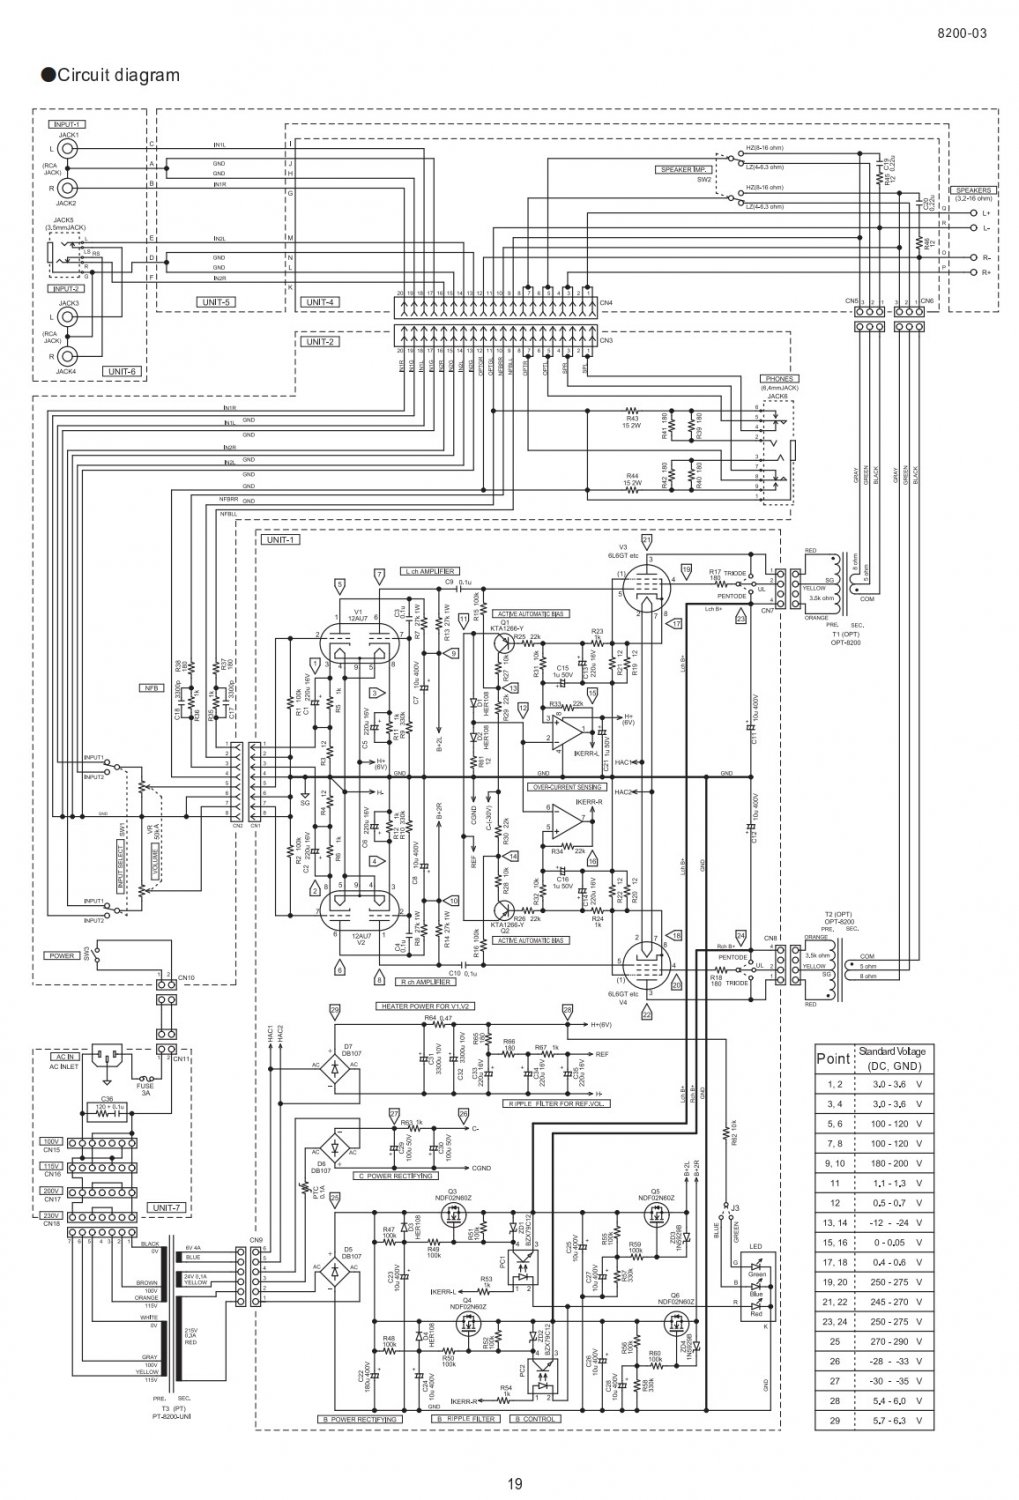 TU-8200R circuit diagram.jpg